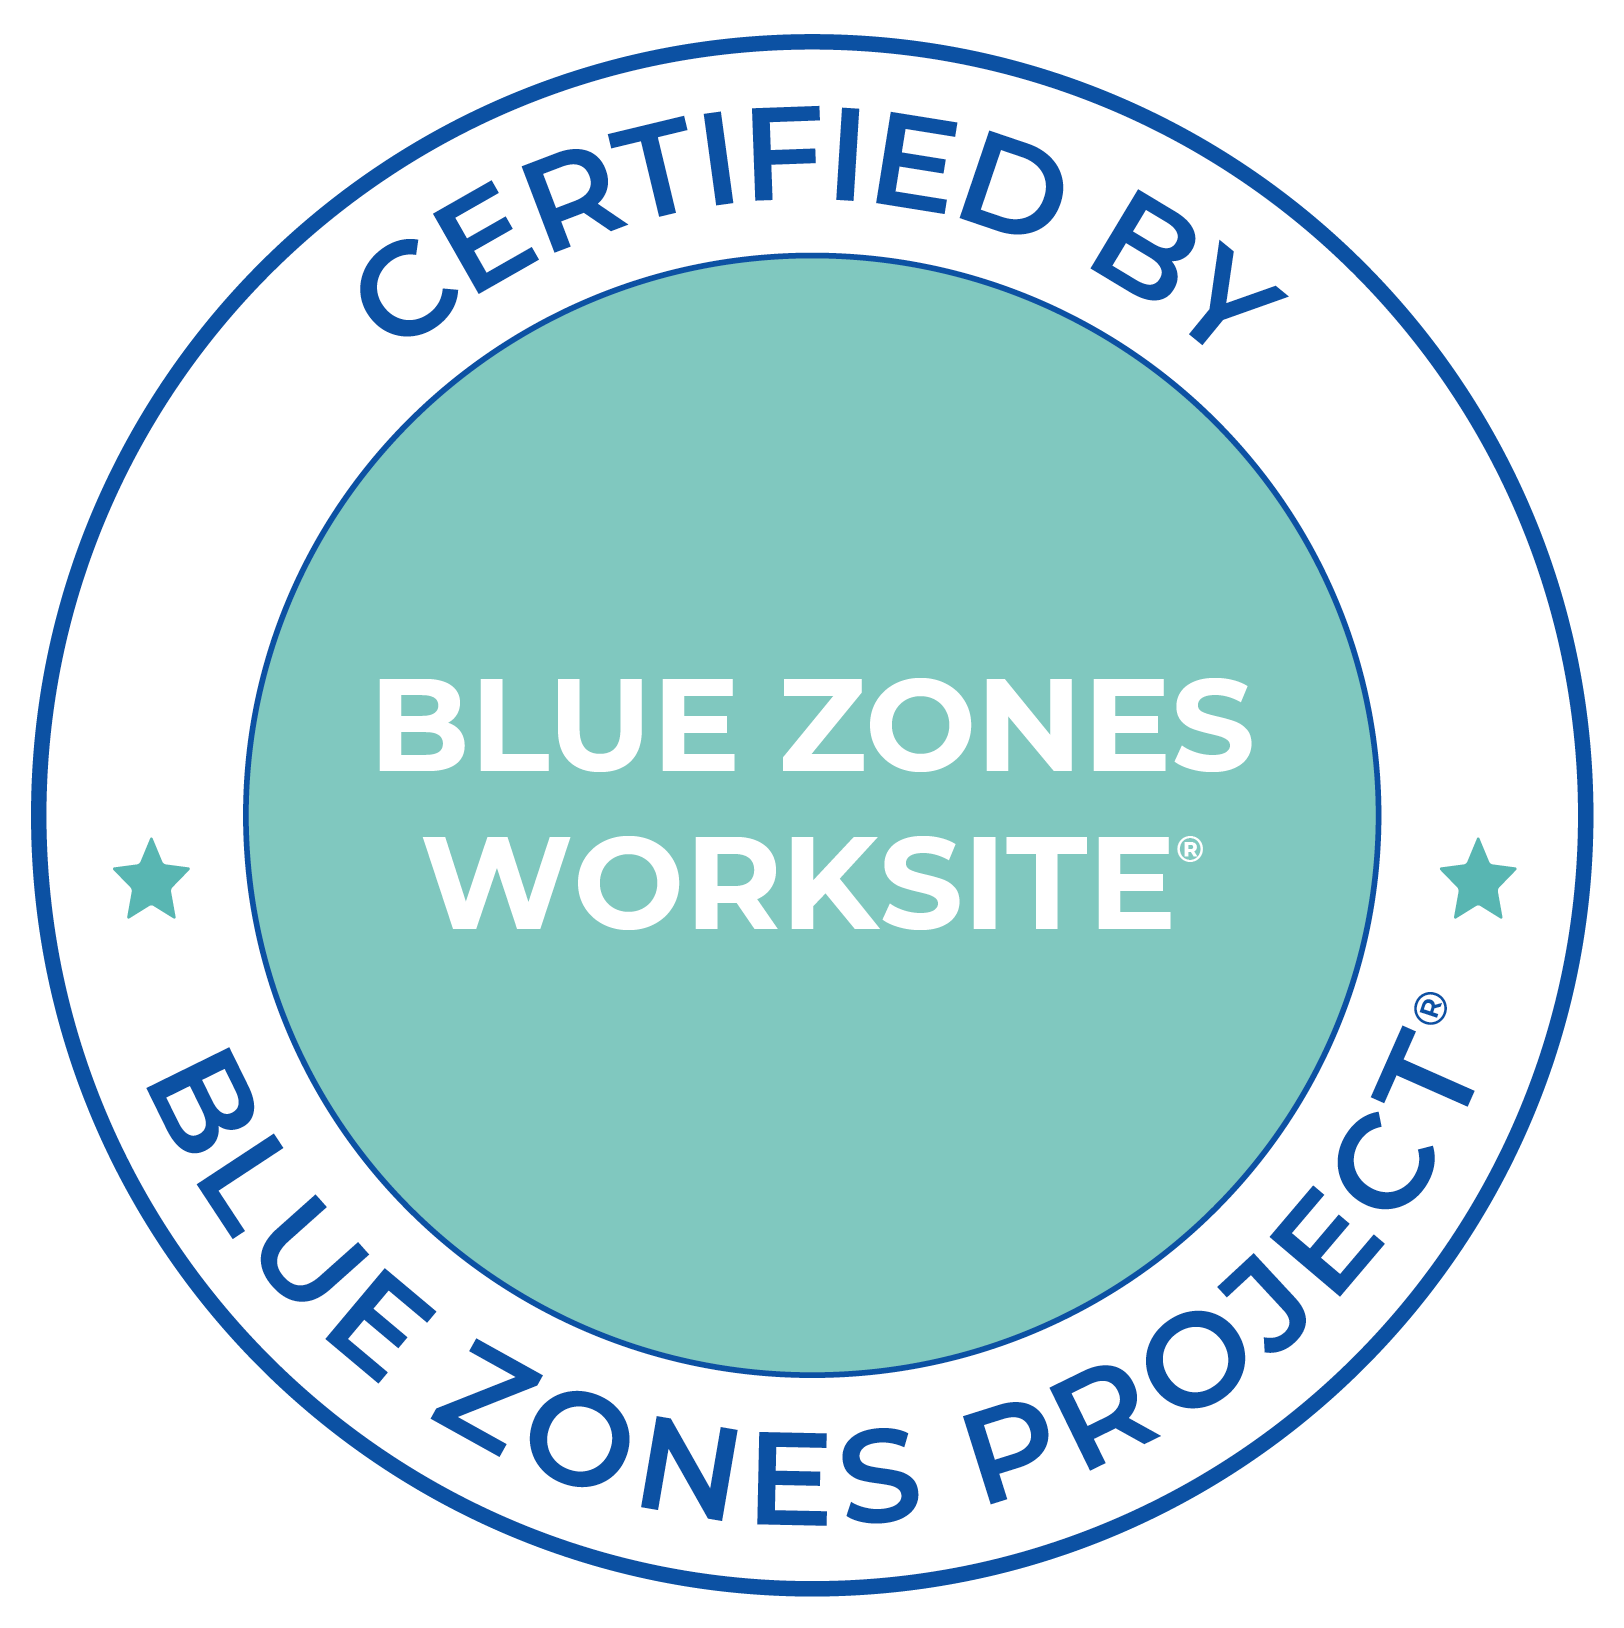 Certified Blue Zones Worksite